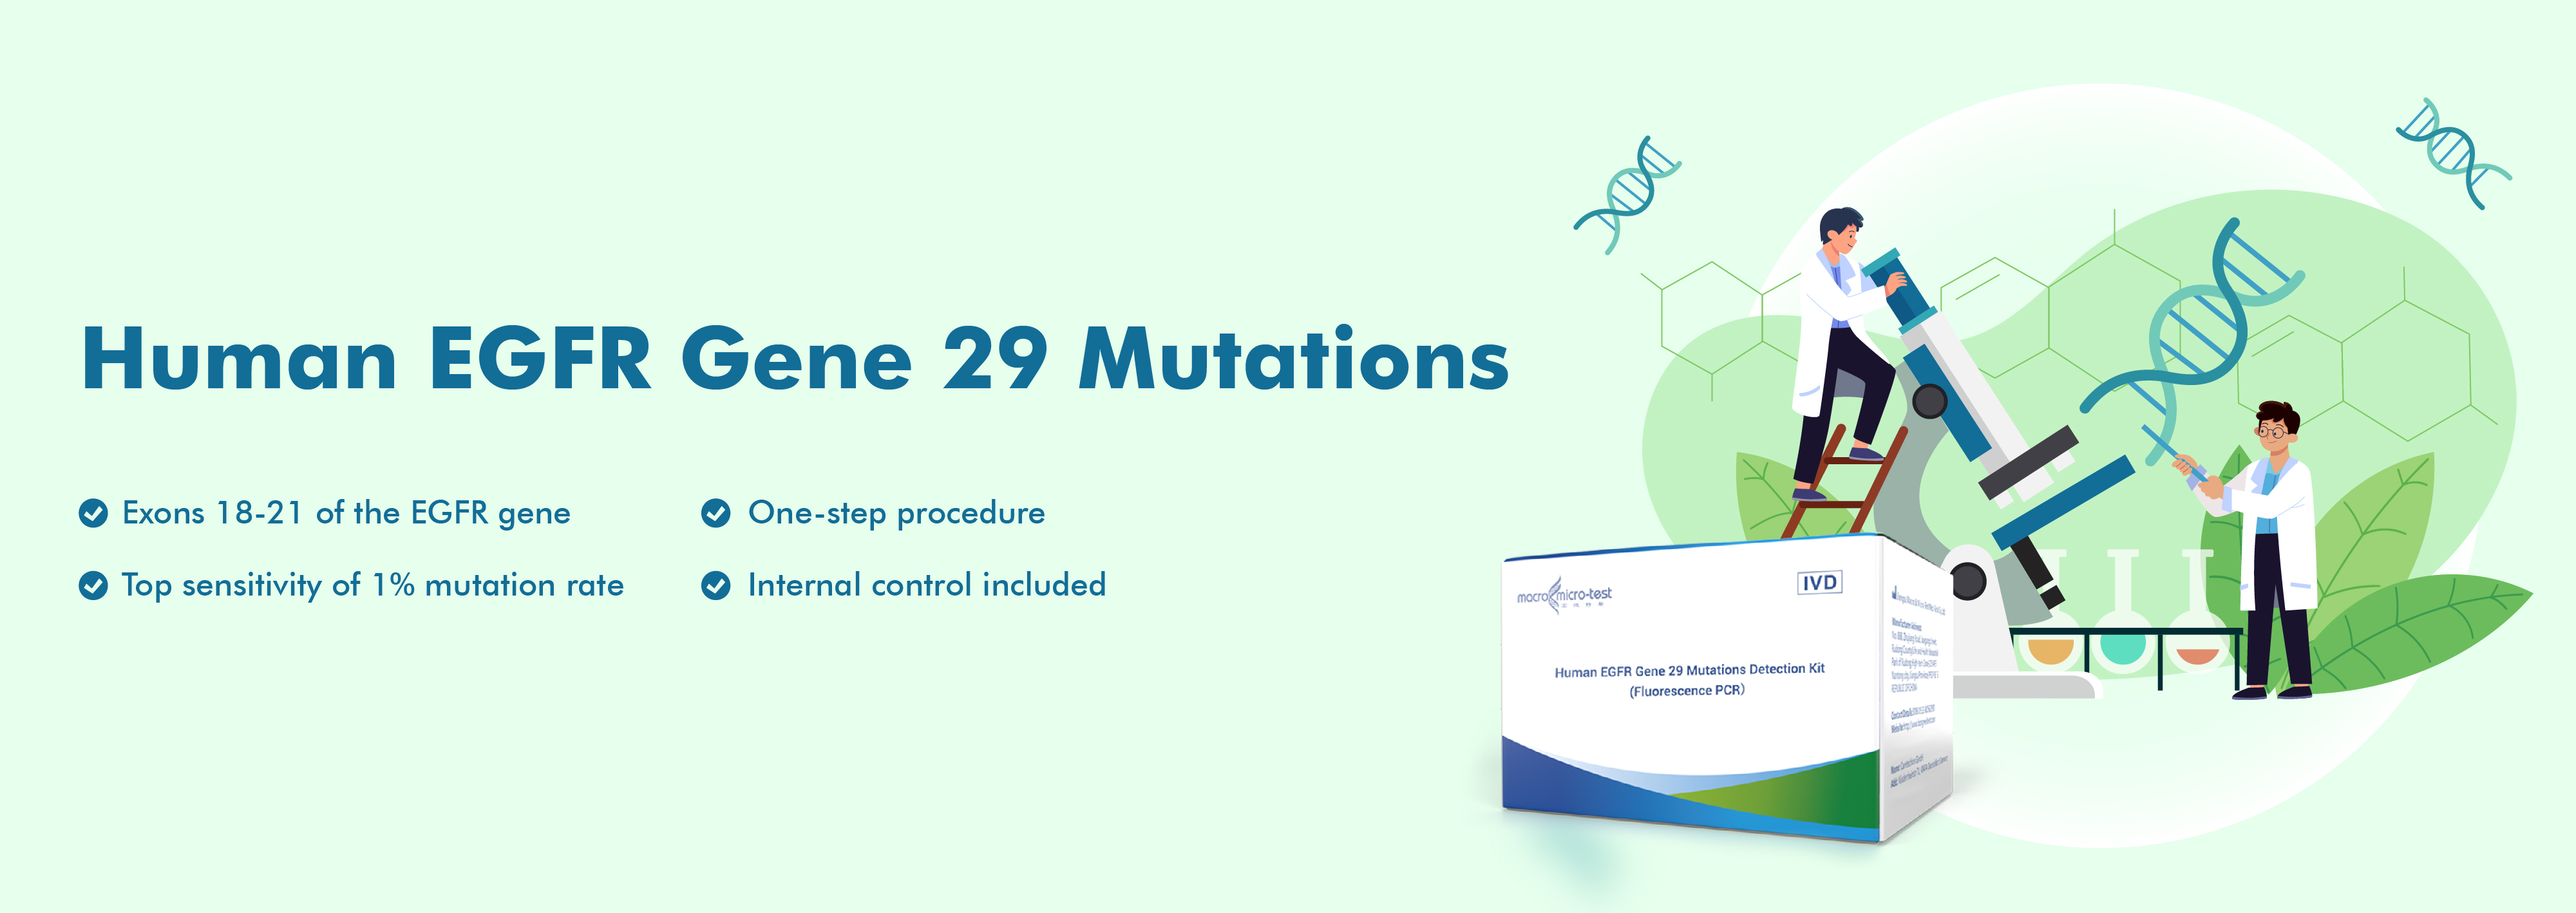 Mutacije ljudskog EGFR gena 29